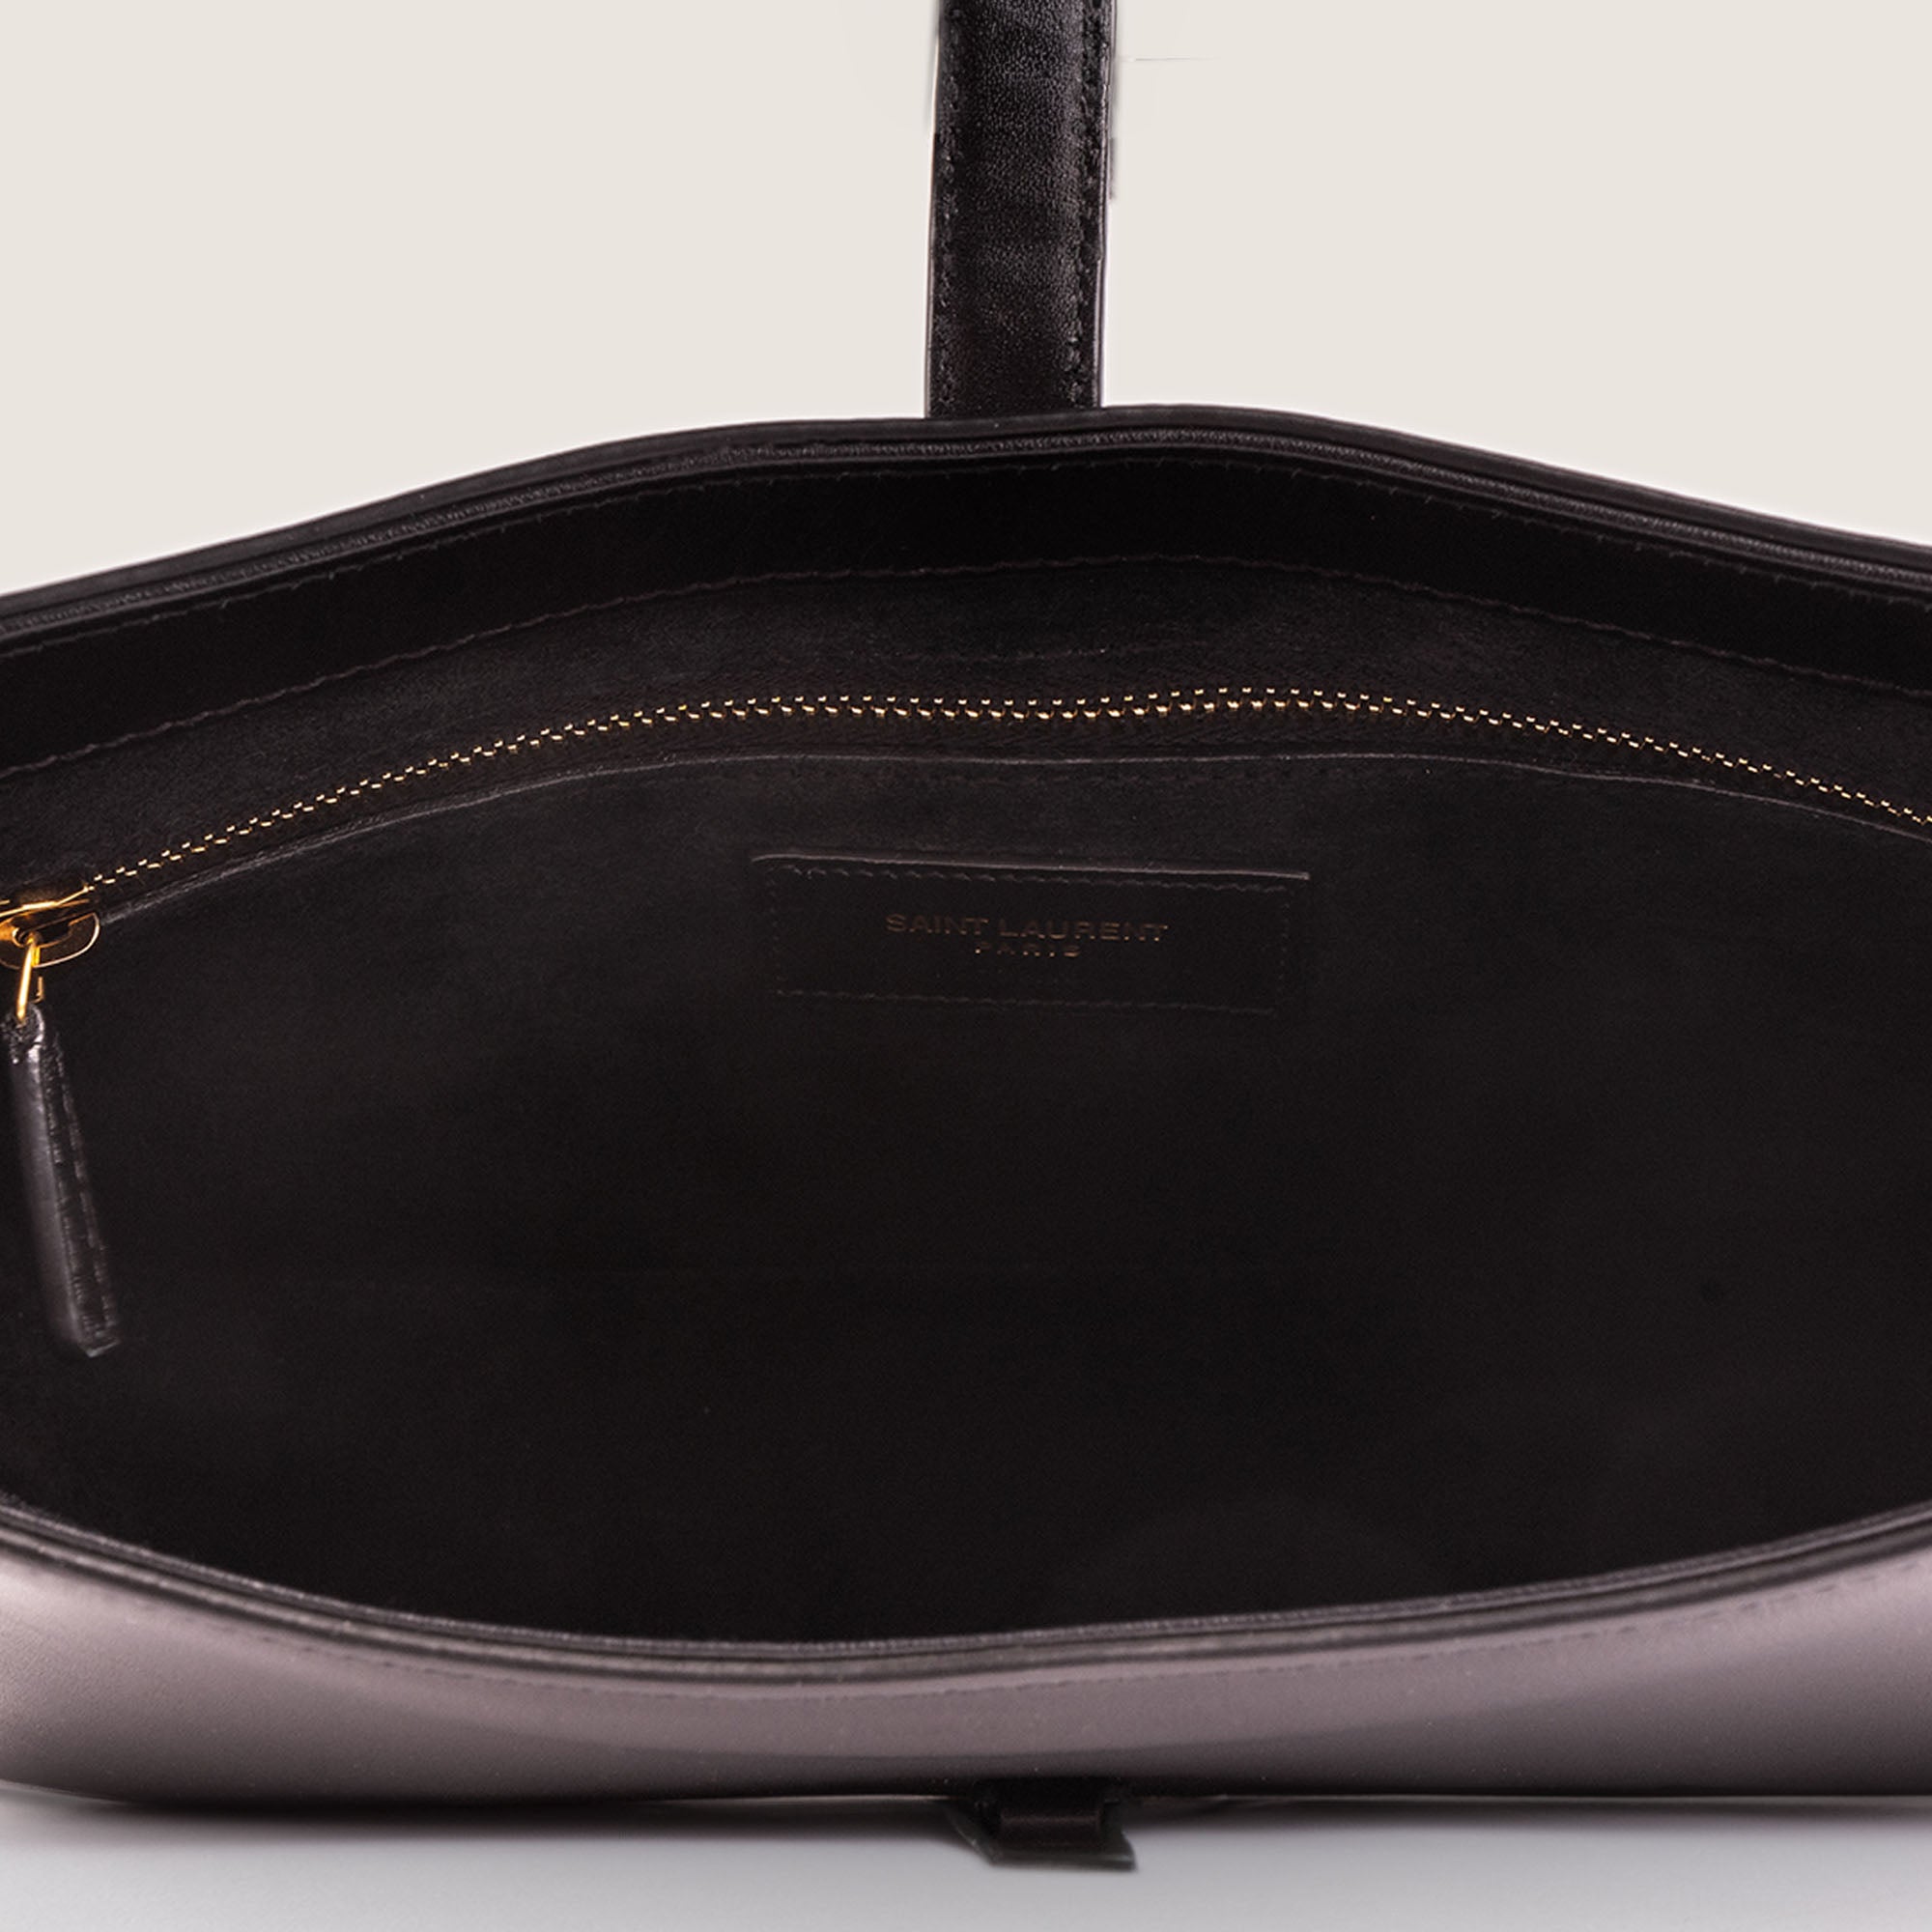 Le 5 Á 7 Shoulder Bag - SAINT LAURENT - Affordable Luxury image